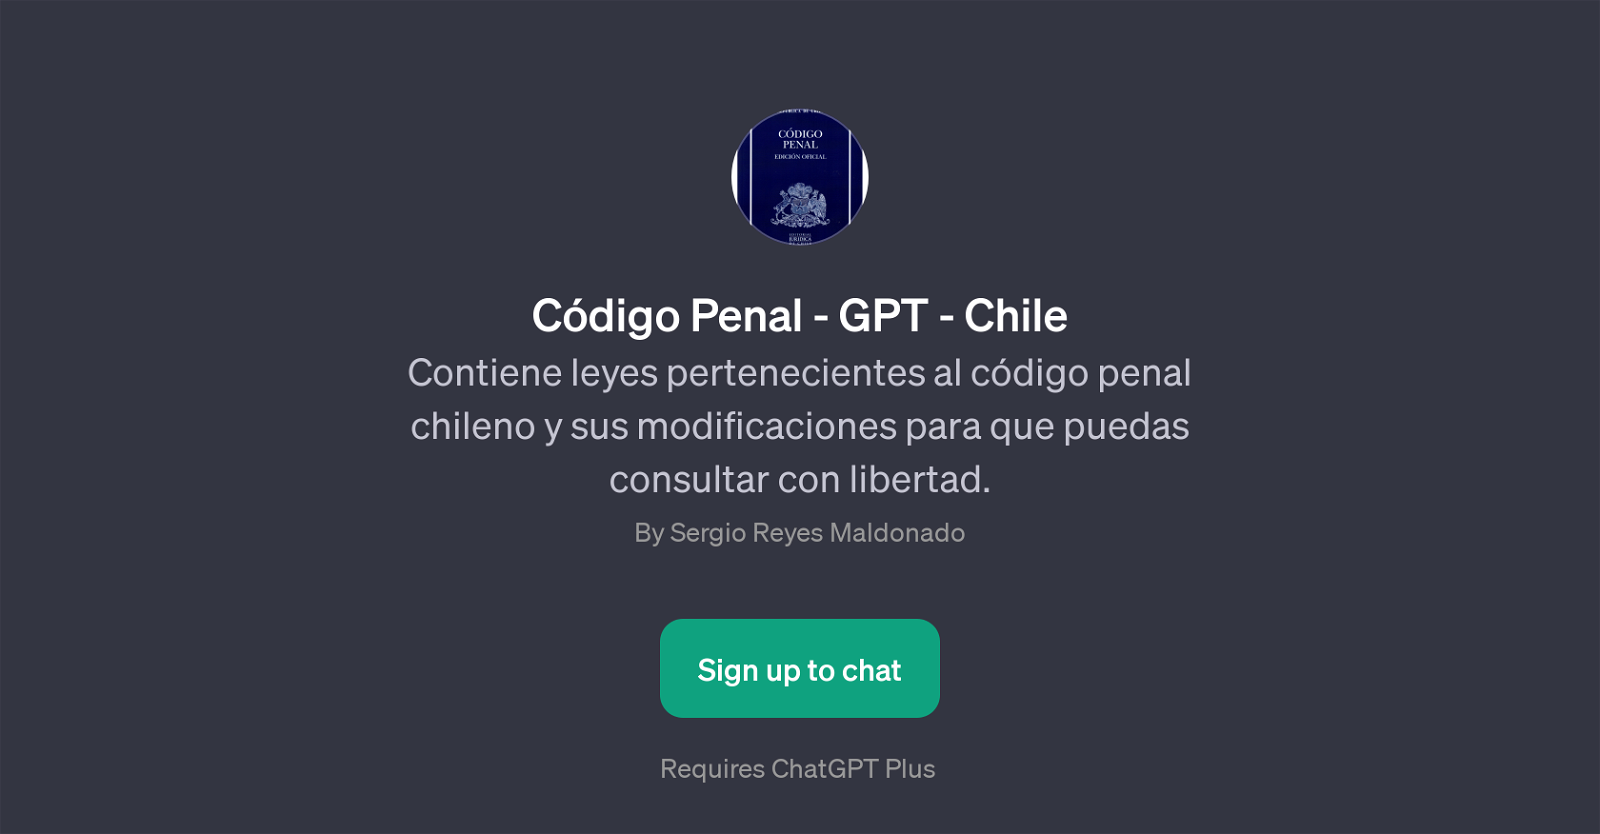 Cdigo Penal - GPT - Chile website